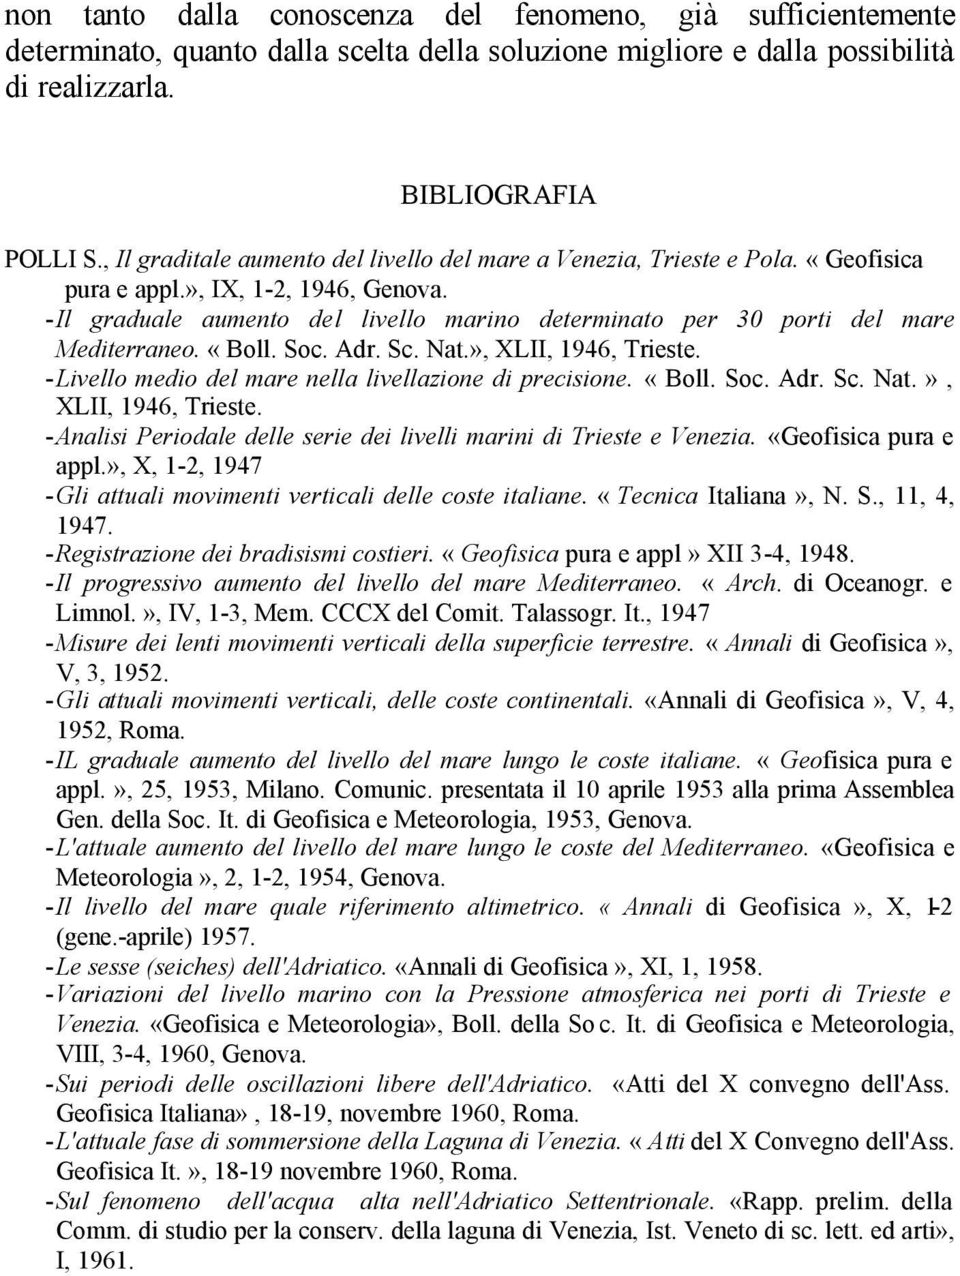 Il graduale aumento del livello marino determinato per 30 porti del mare Mediterraneo. «Boll. Soc. Adr. Sc. Nat.», XLII, 1946, Trieste.